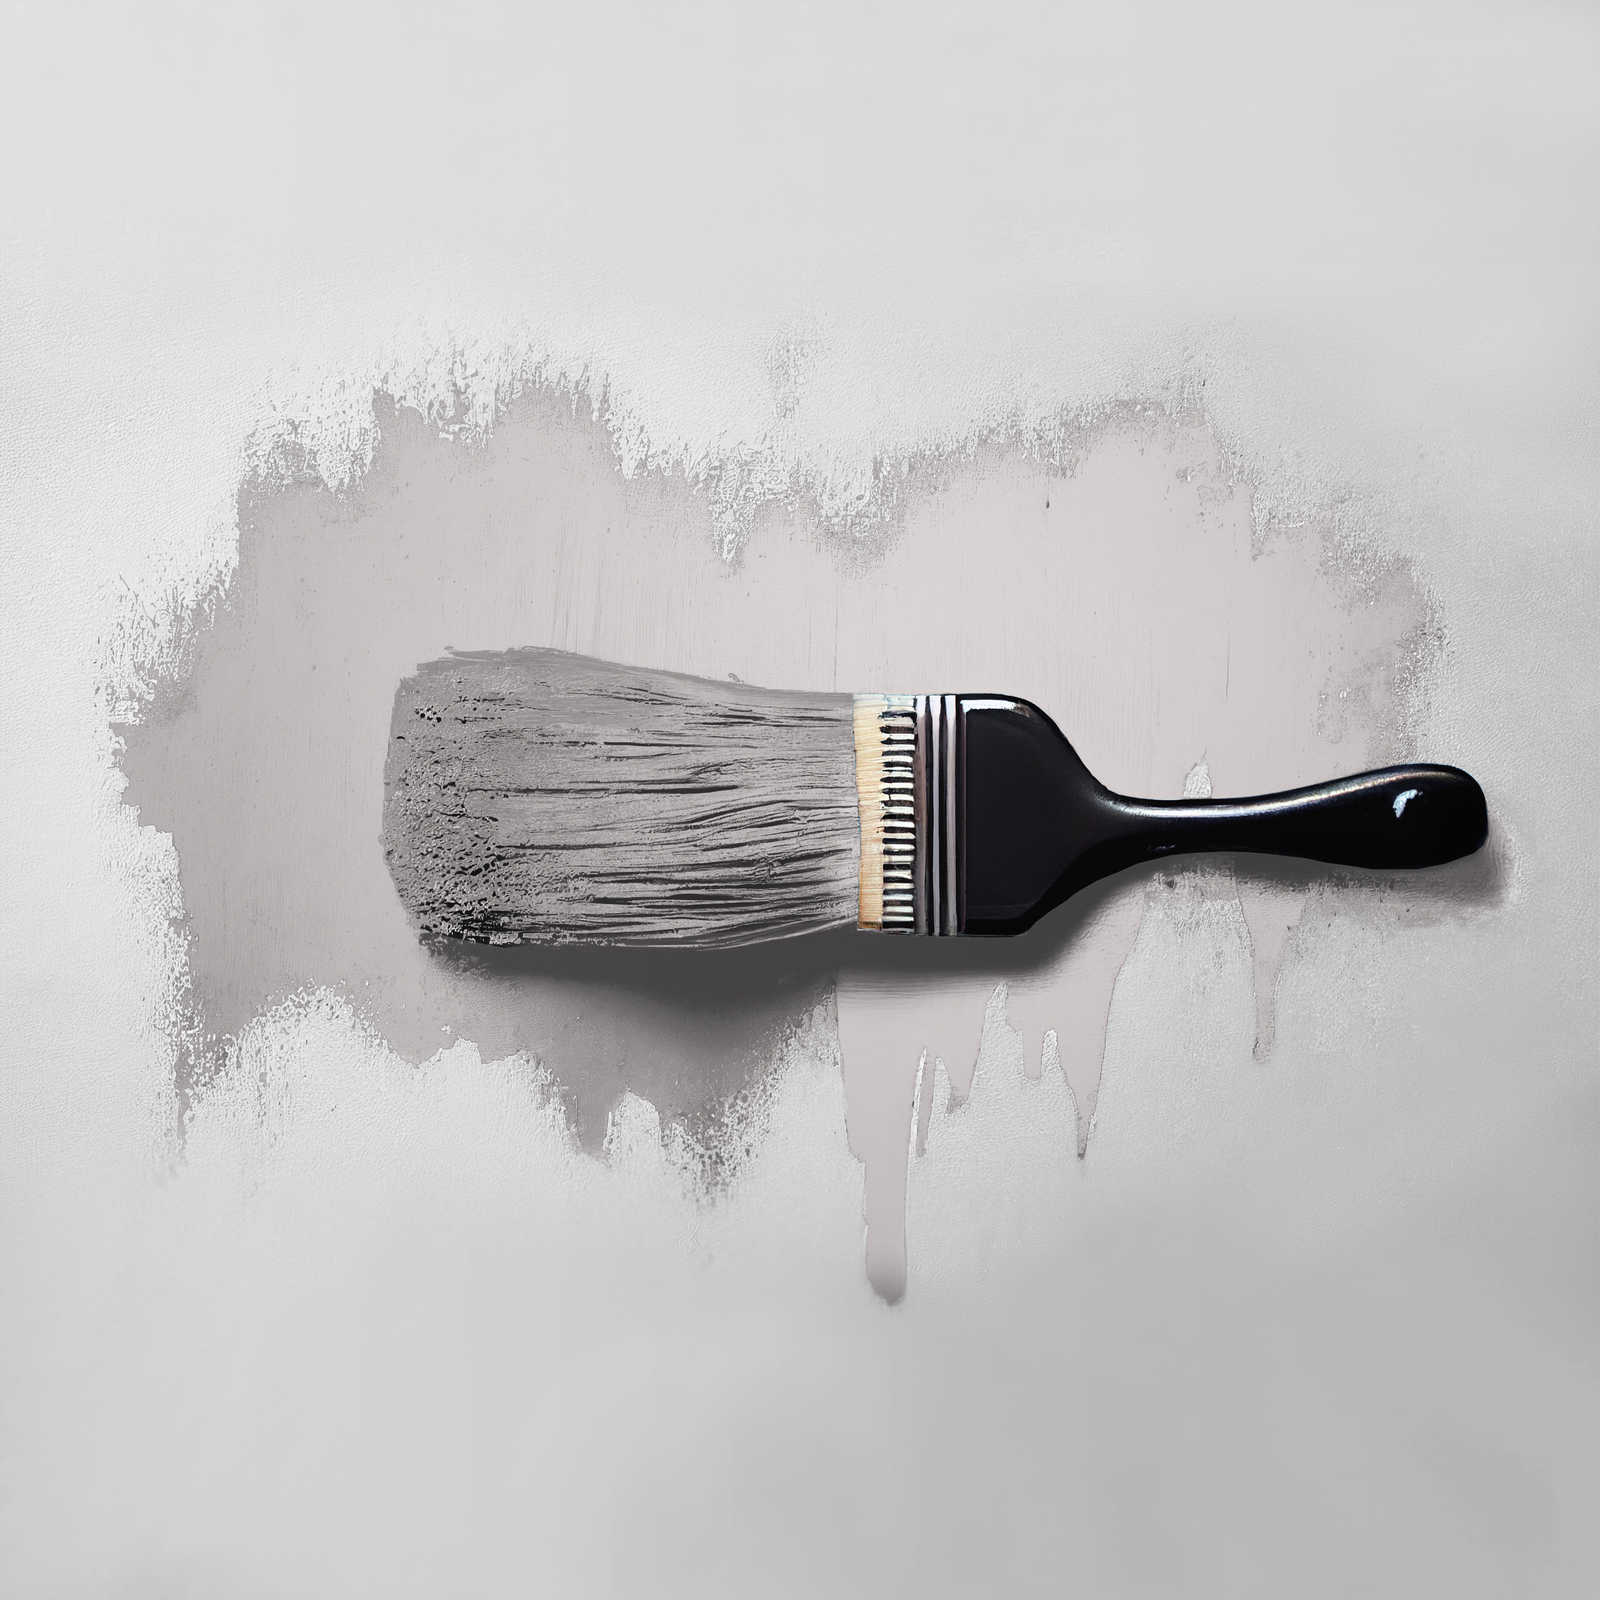             Pittura murale TCK2000 »Calm Clam« in grigio casalingo – 2,5 litri
        